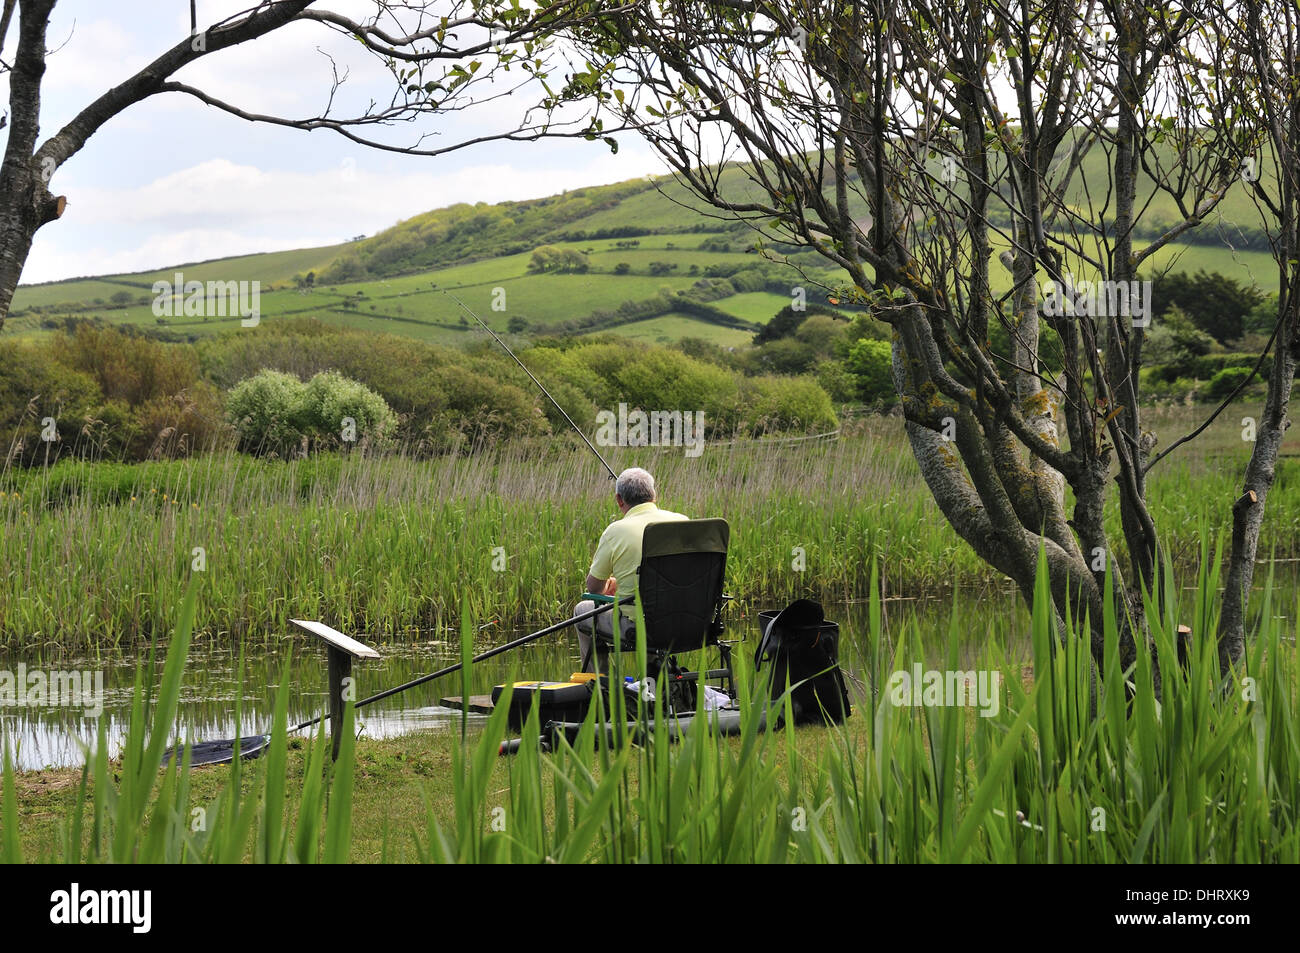 Vista posteriore dell'uomo seduto nella sedia la pesca sulle sponde di un lago del parco di Parkdean holiday park, Croyde, Devon, Inghilterra, Regno Unito Foto Stock